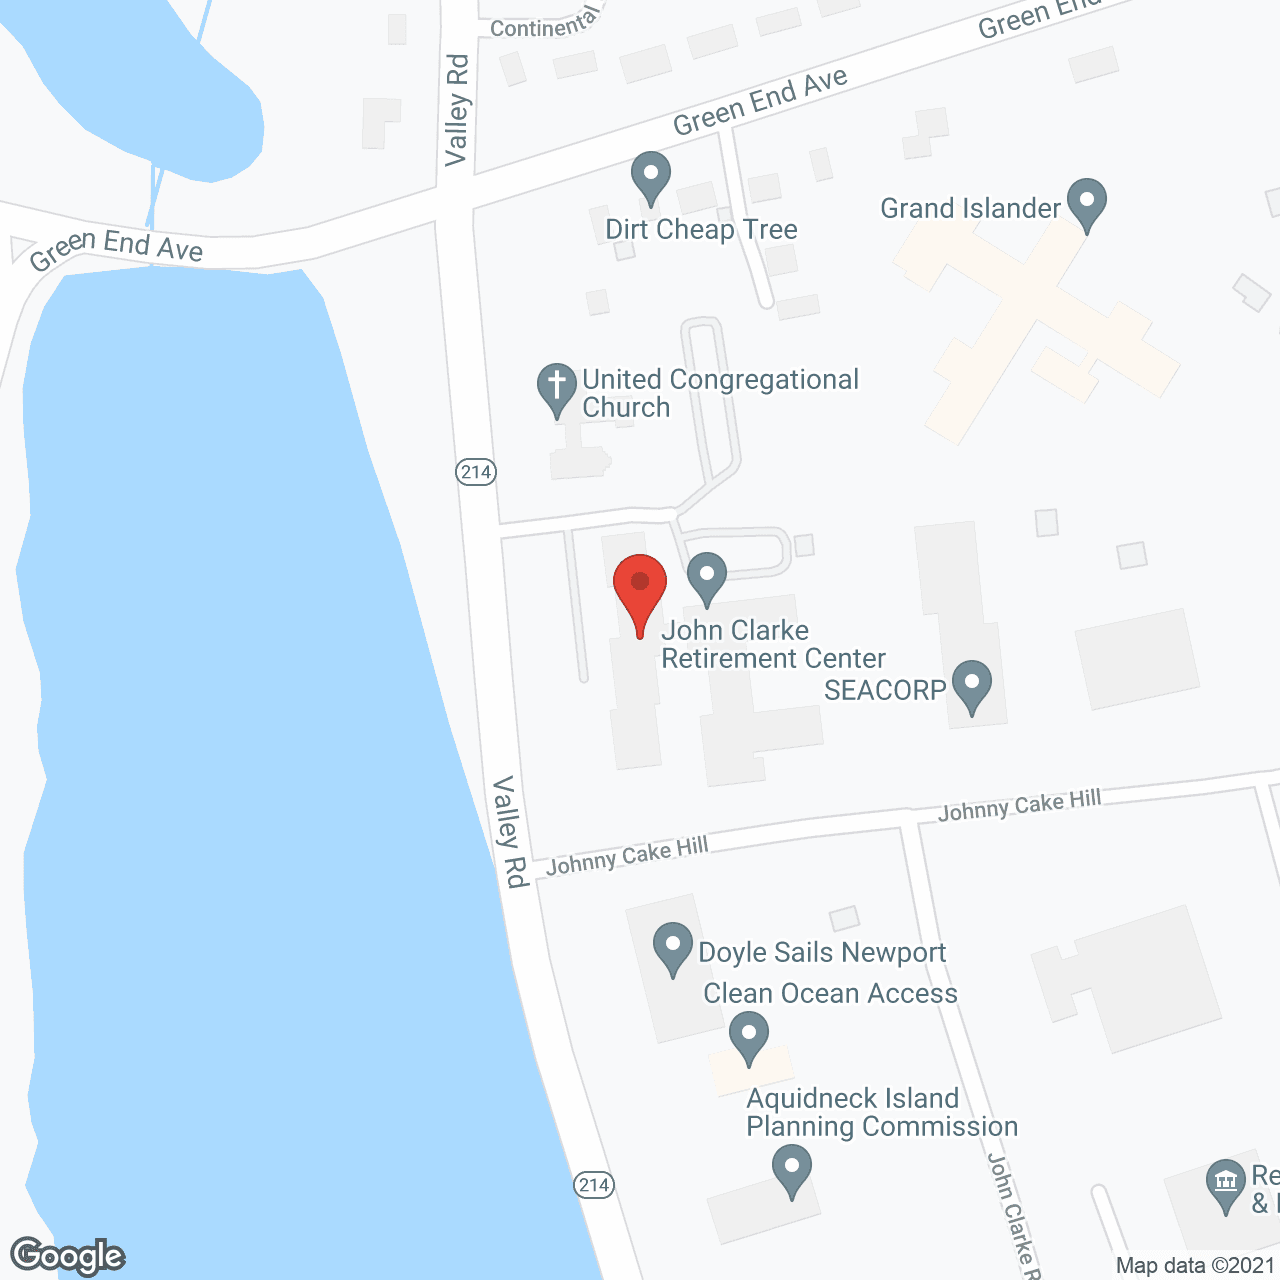 The John Clarke Retirement Center in google map